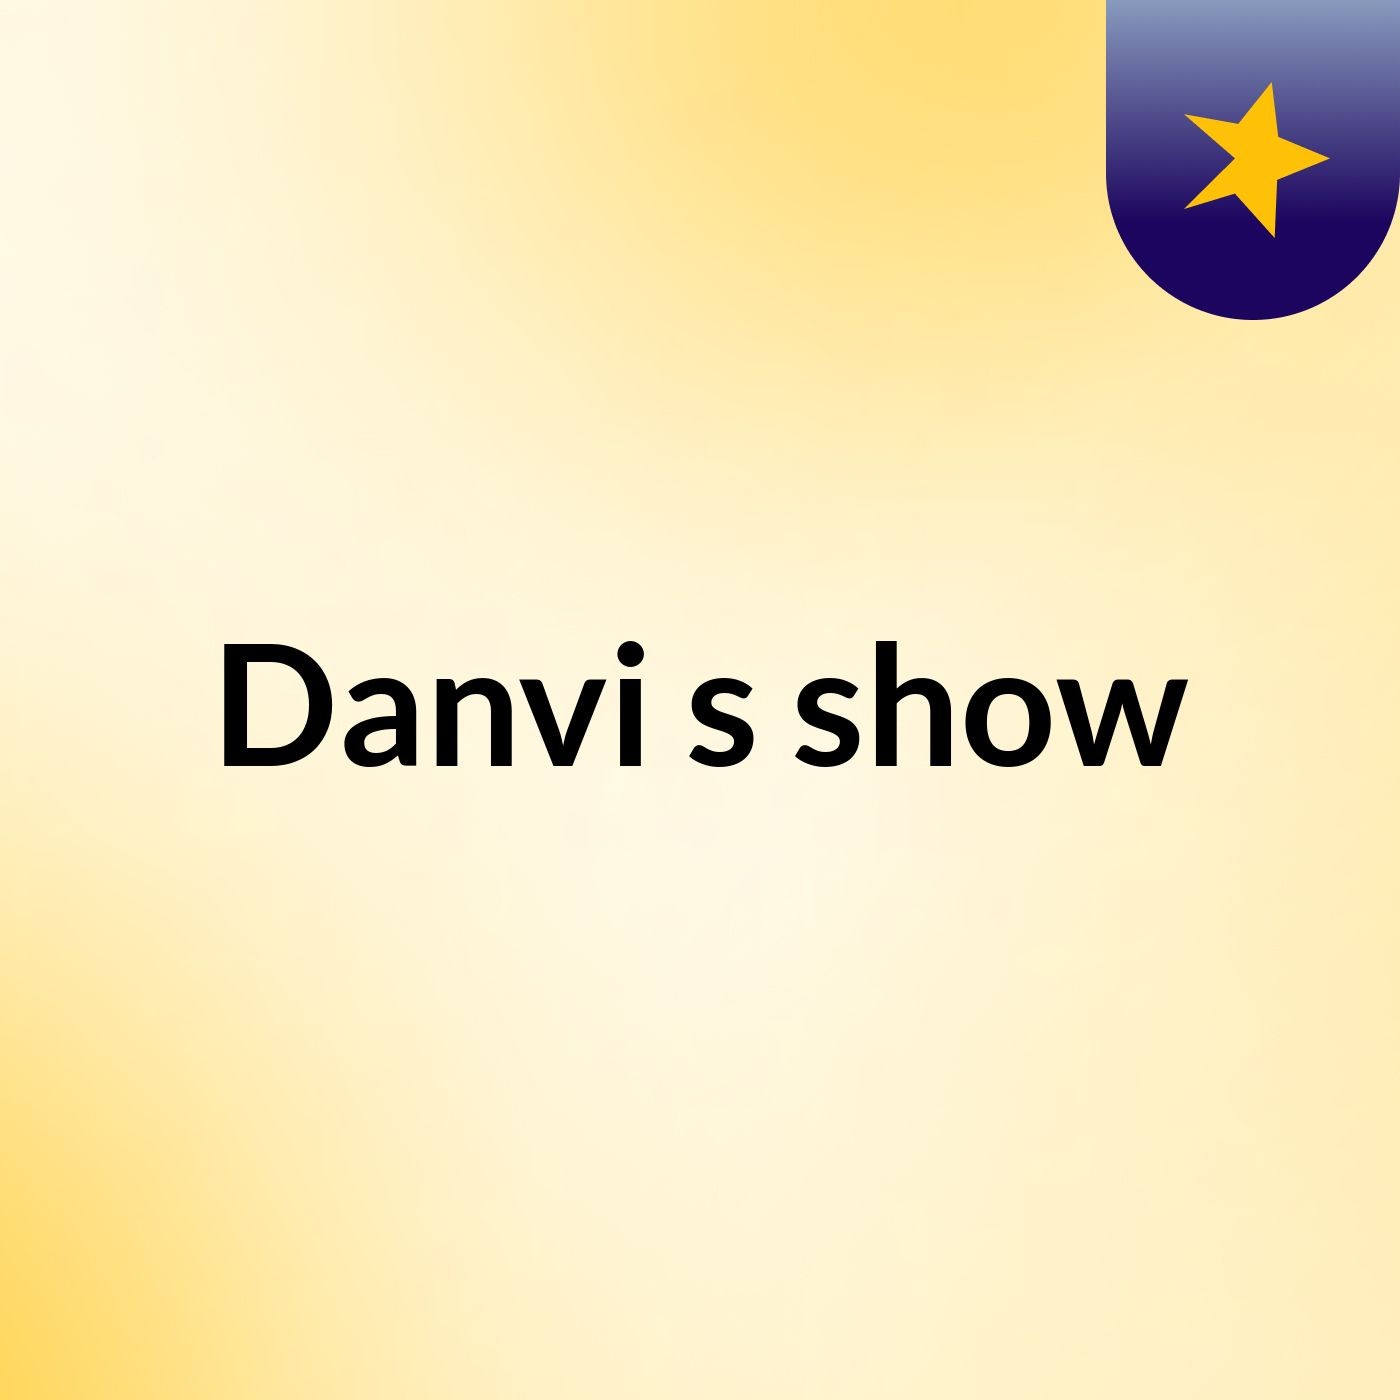 Danvi's show